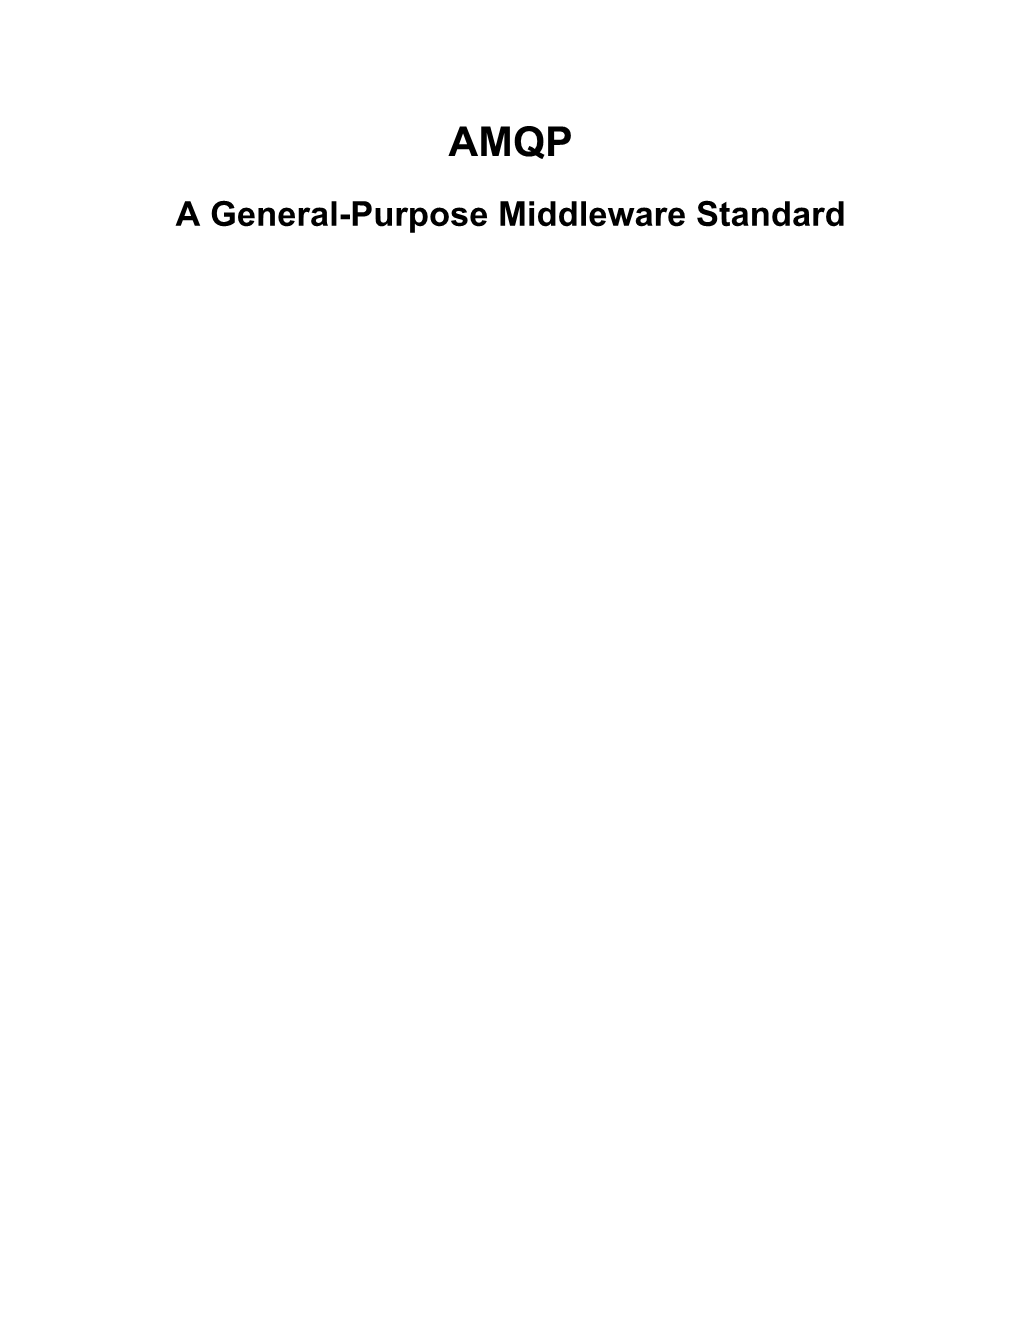 AMQP a General-Purpose Middleware Standard AMQP: a General-Purpose Middleware Standard